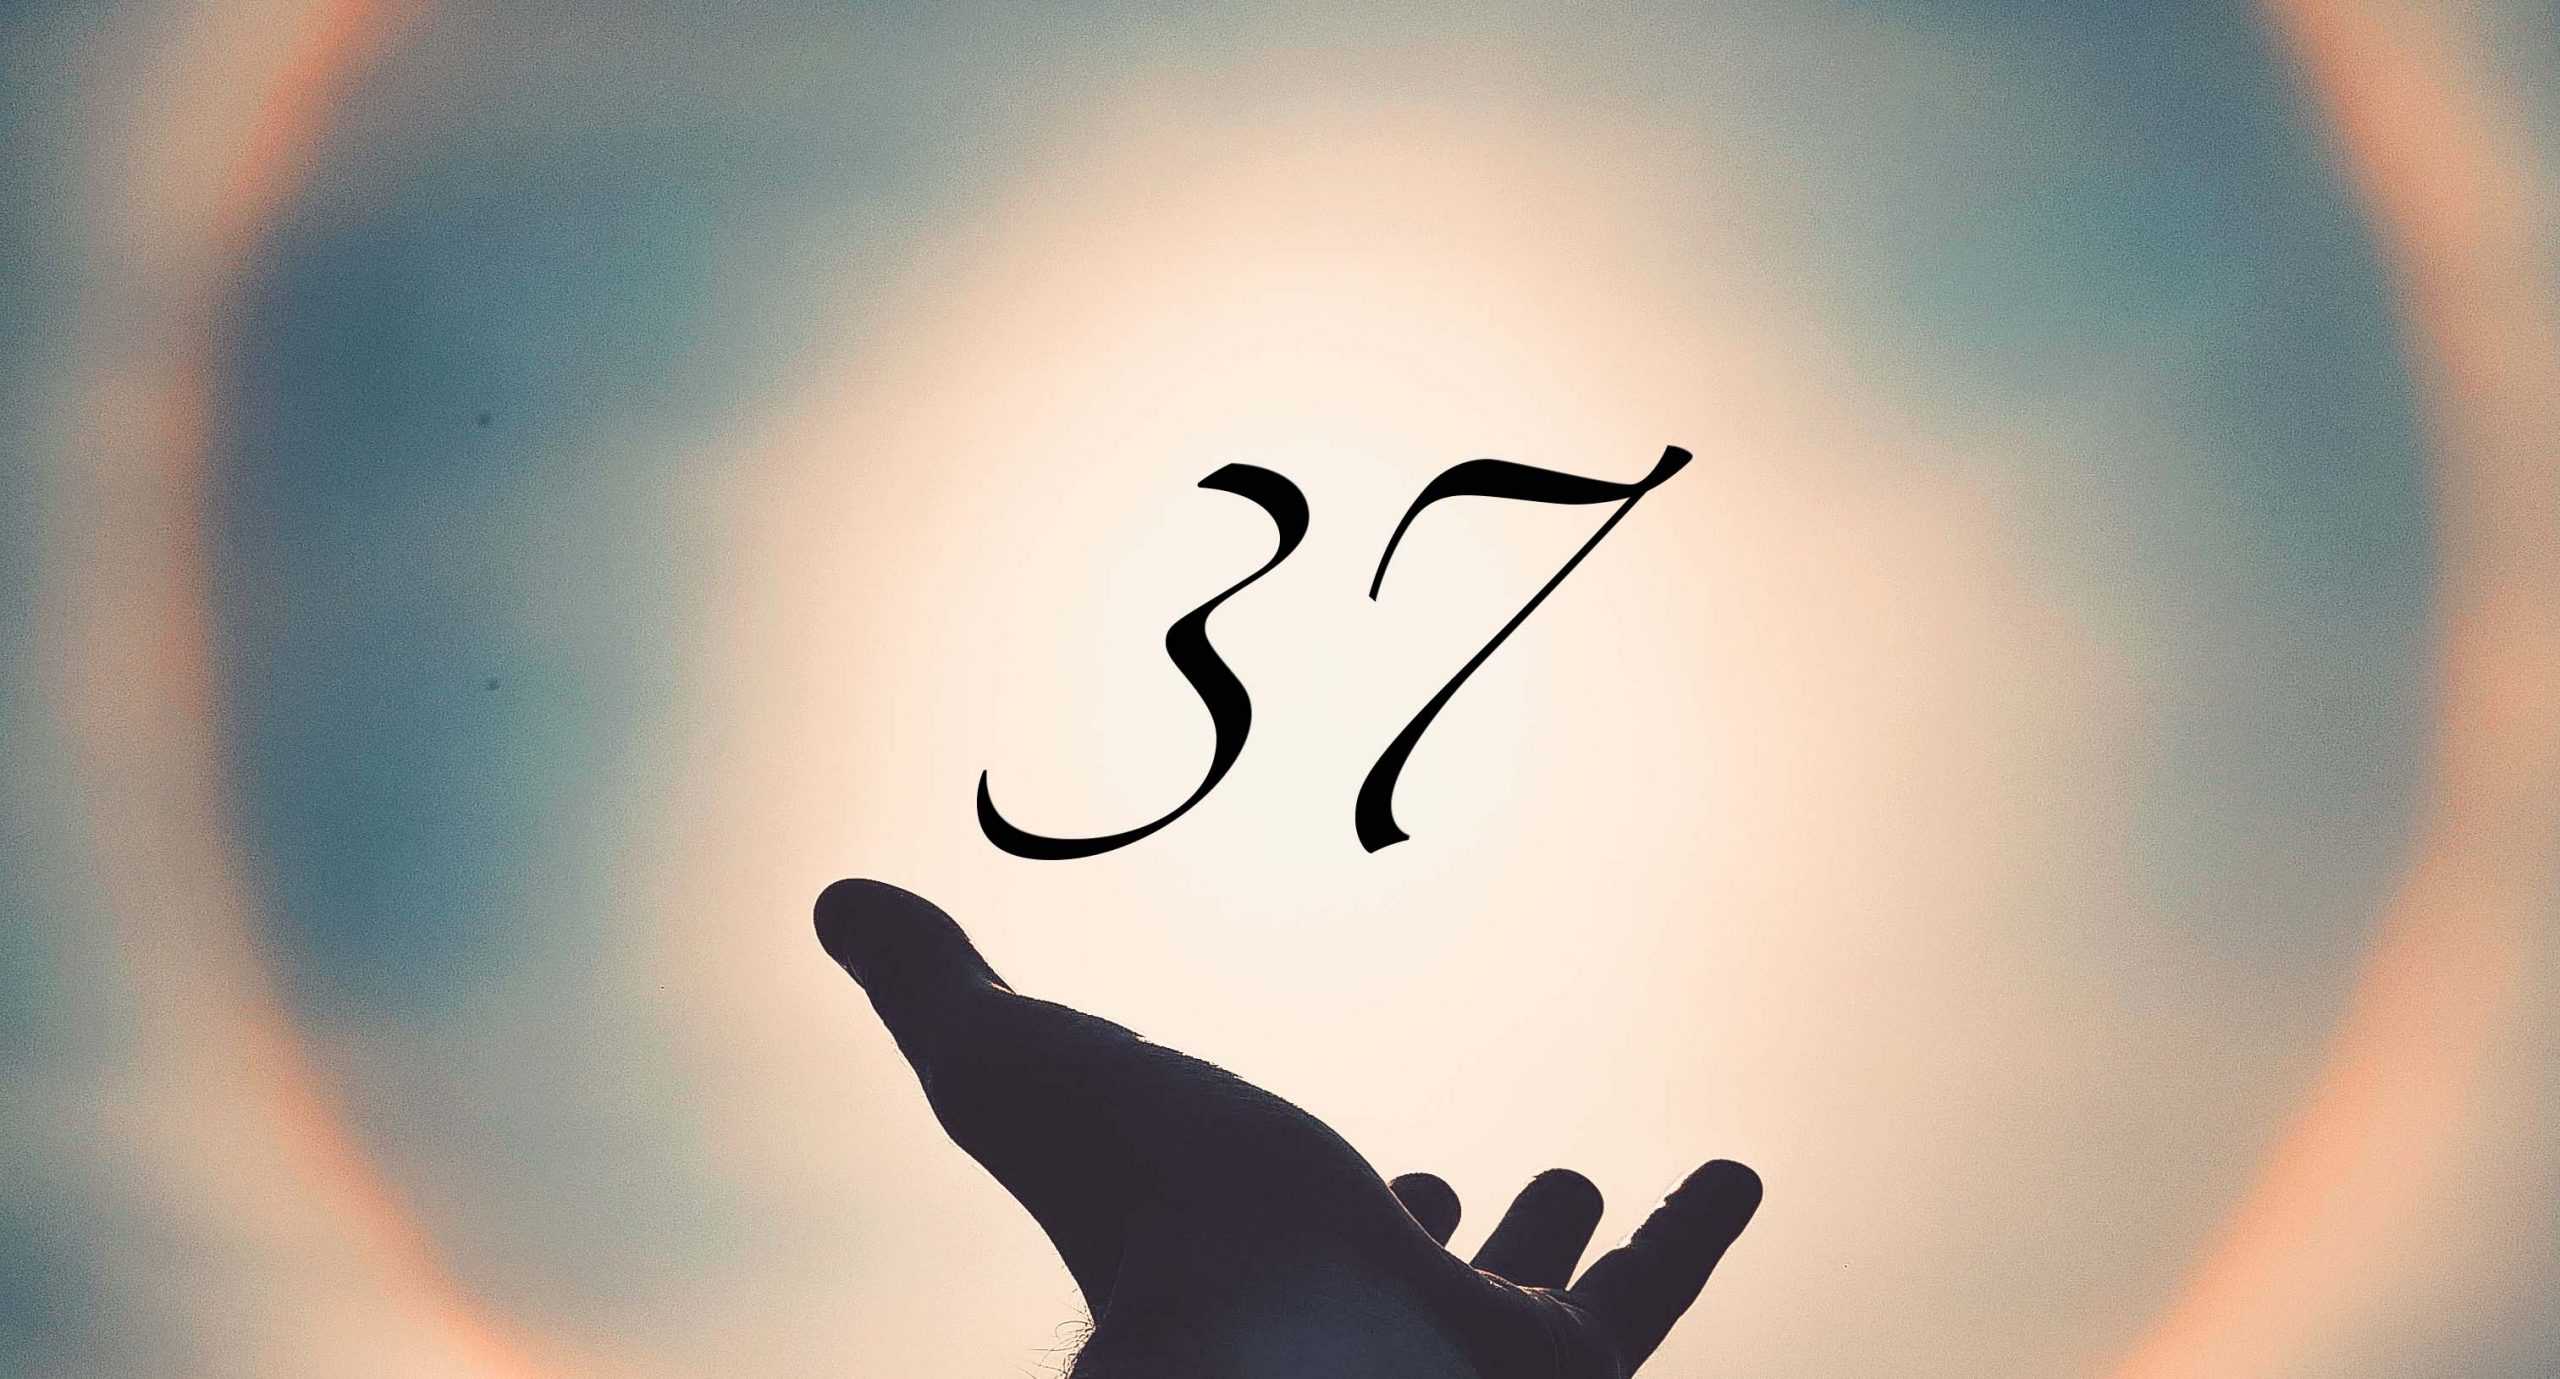 Signification du nombre 37